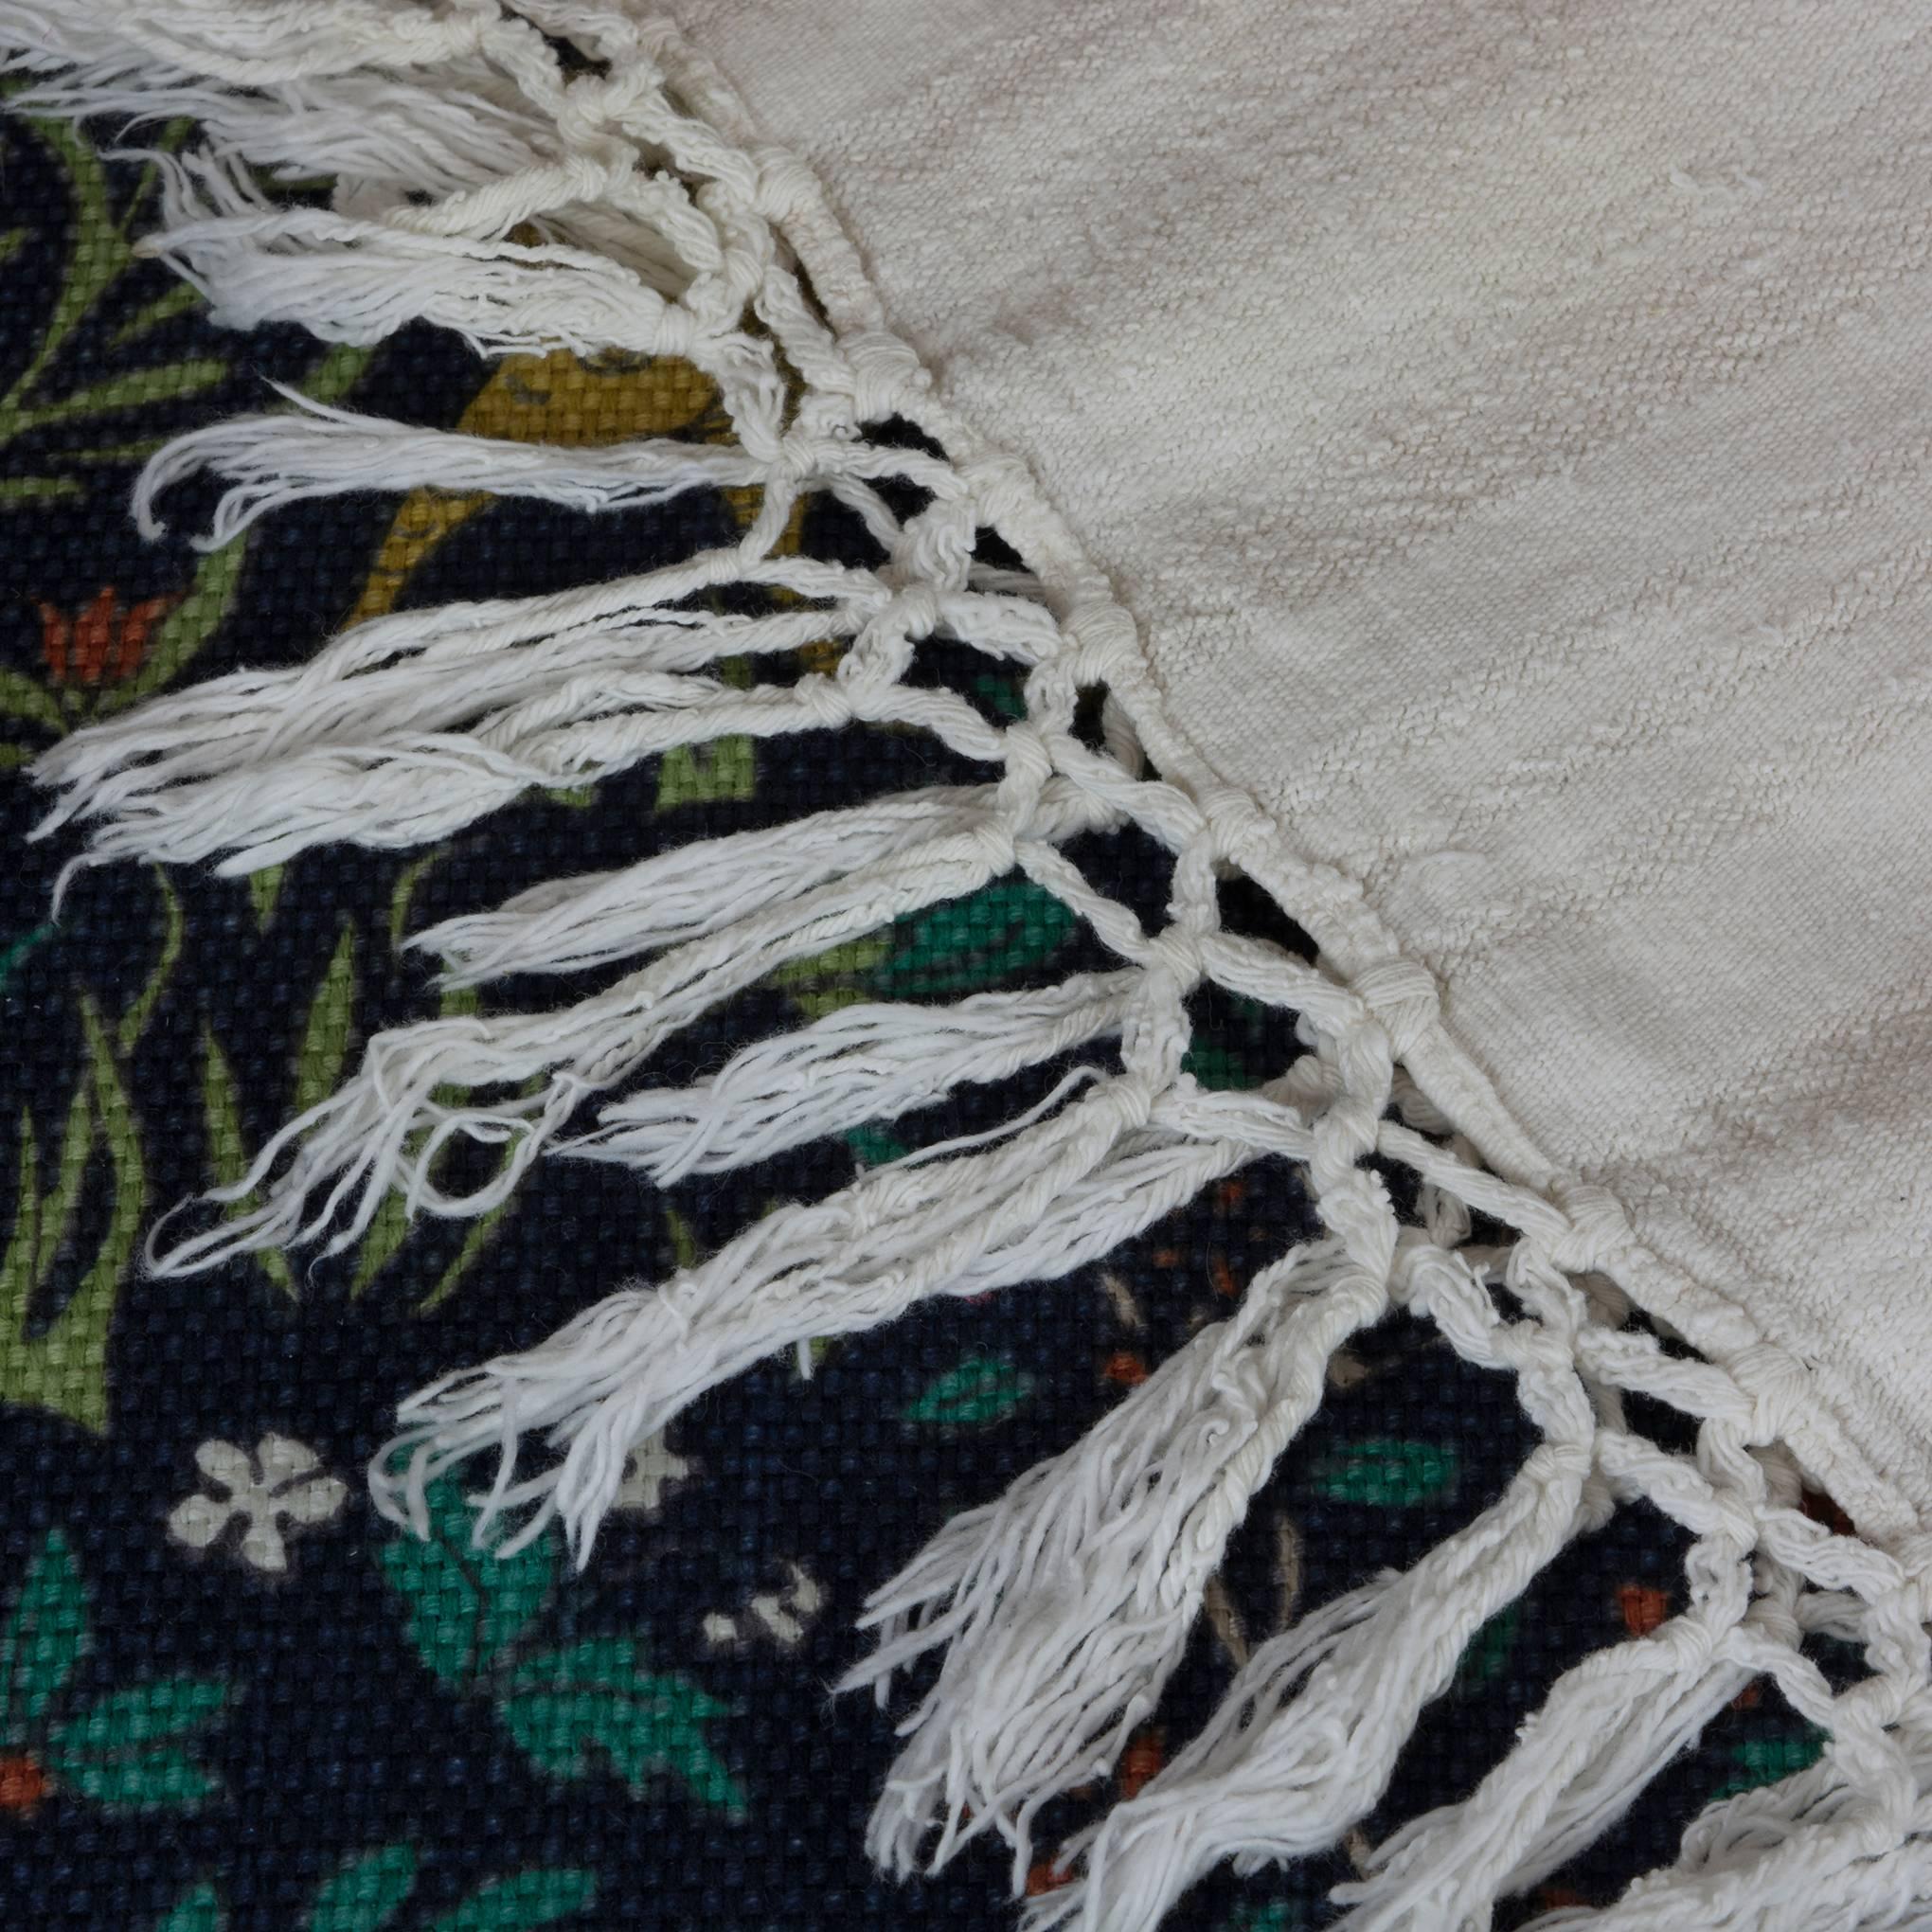 Greek Antique Handwoven Cotton Linen Coverlet